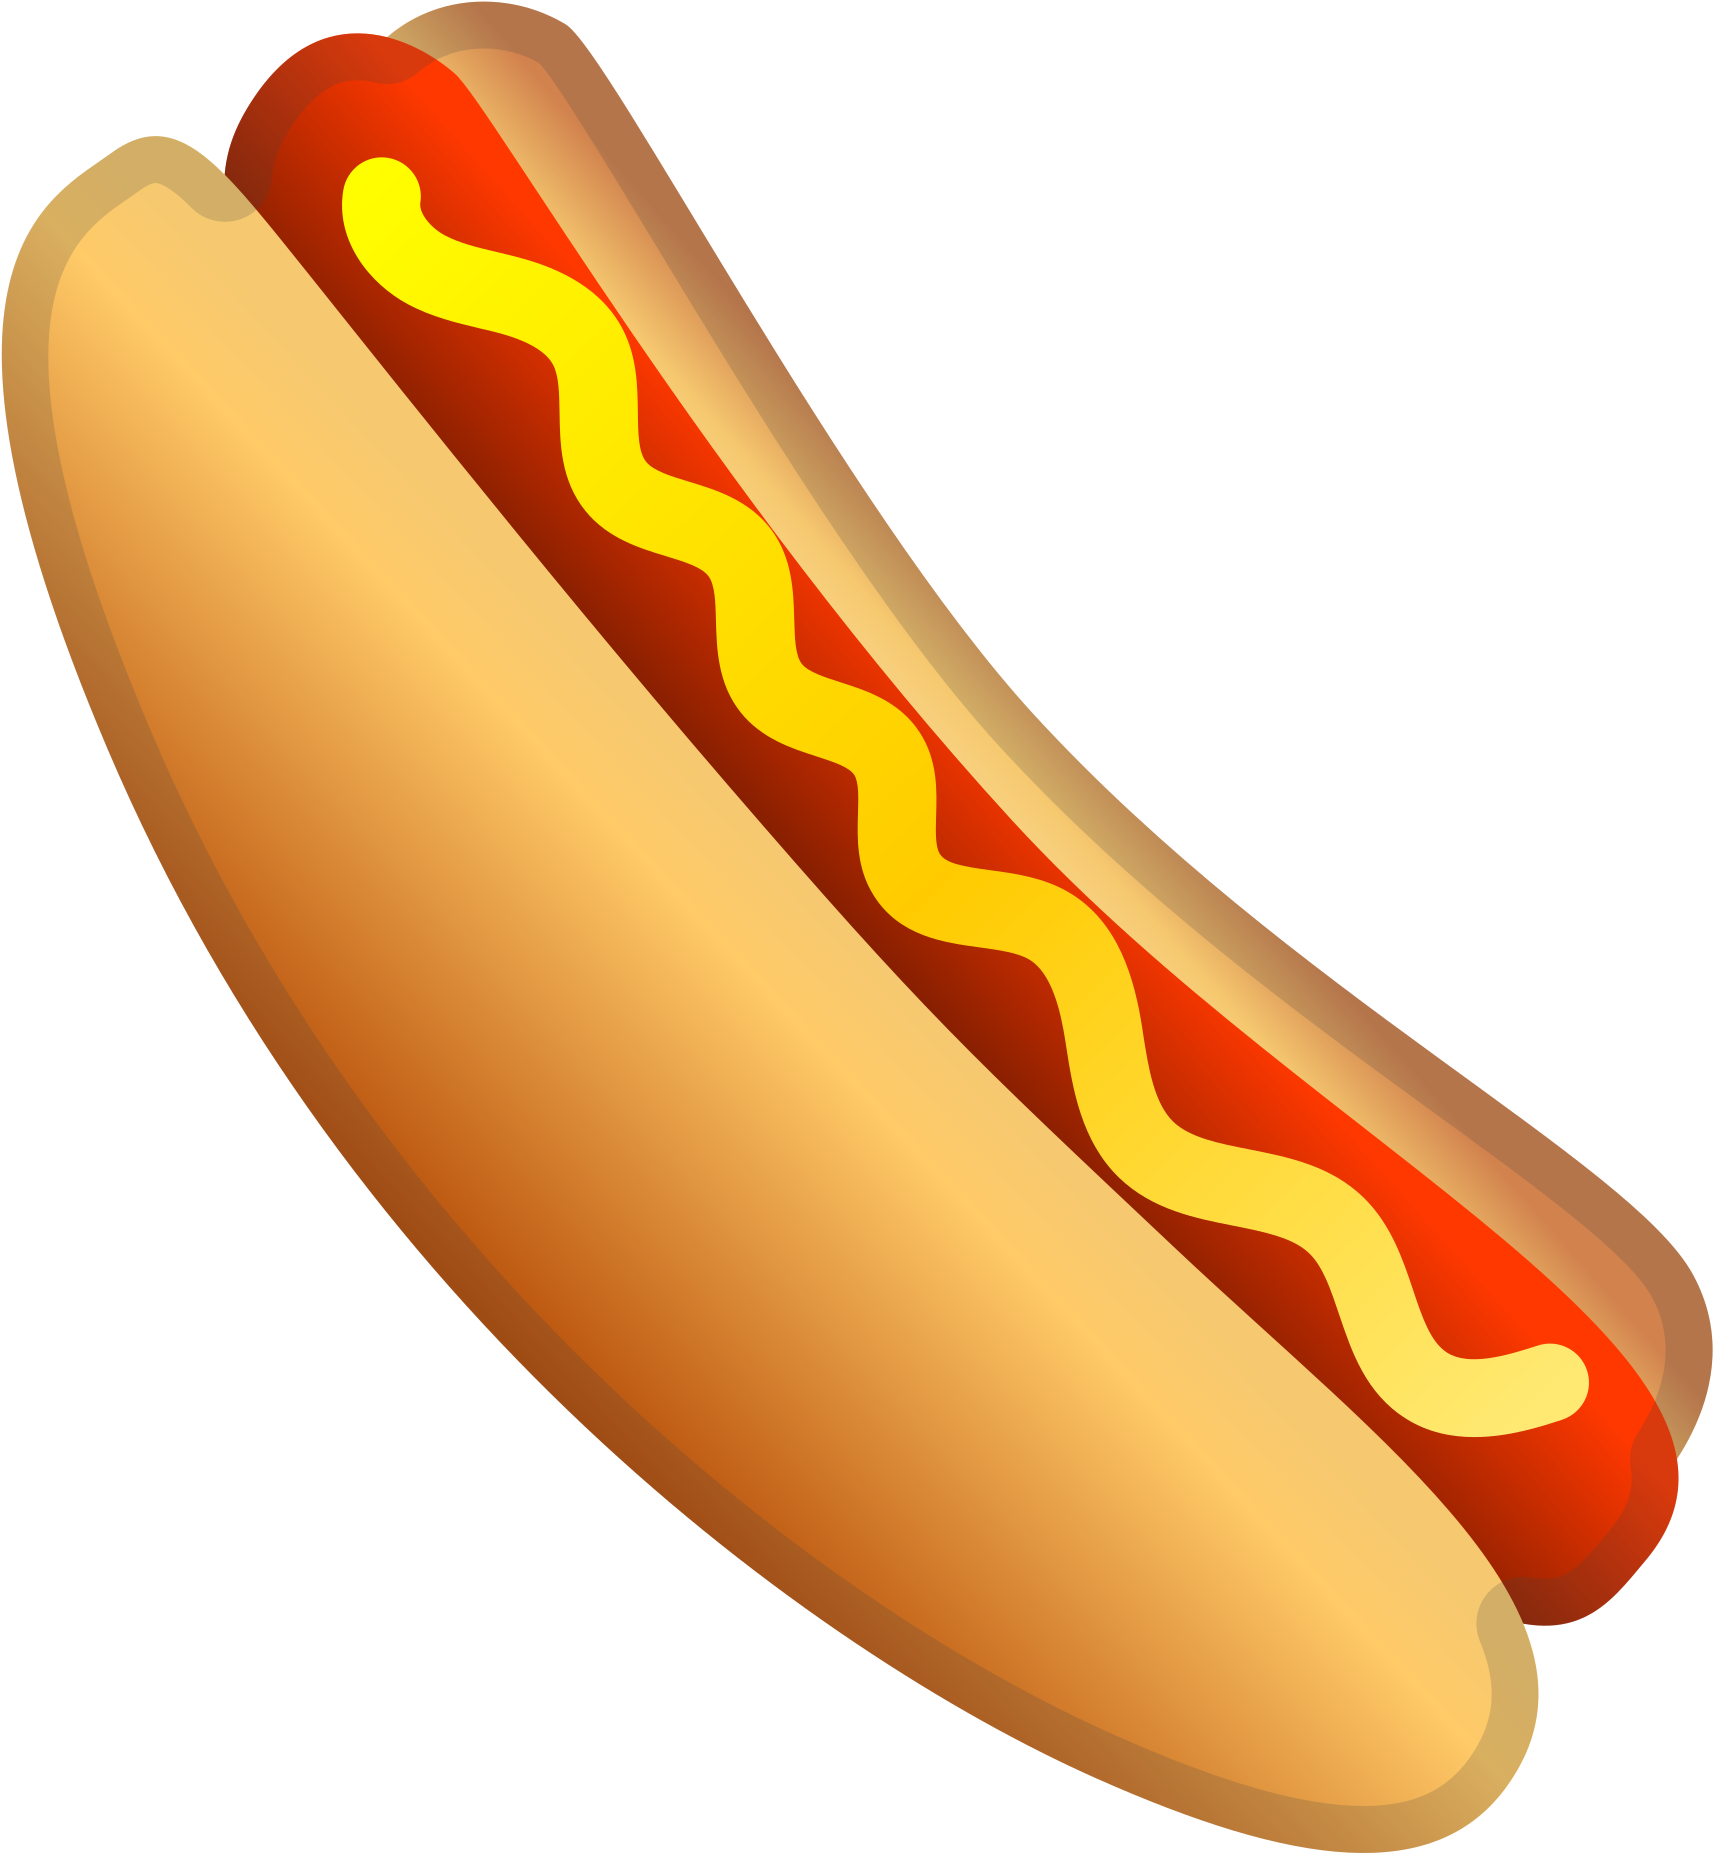 Hot dog icon.